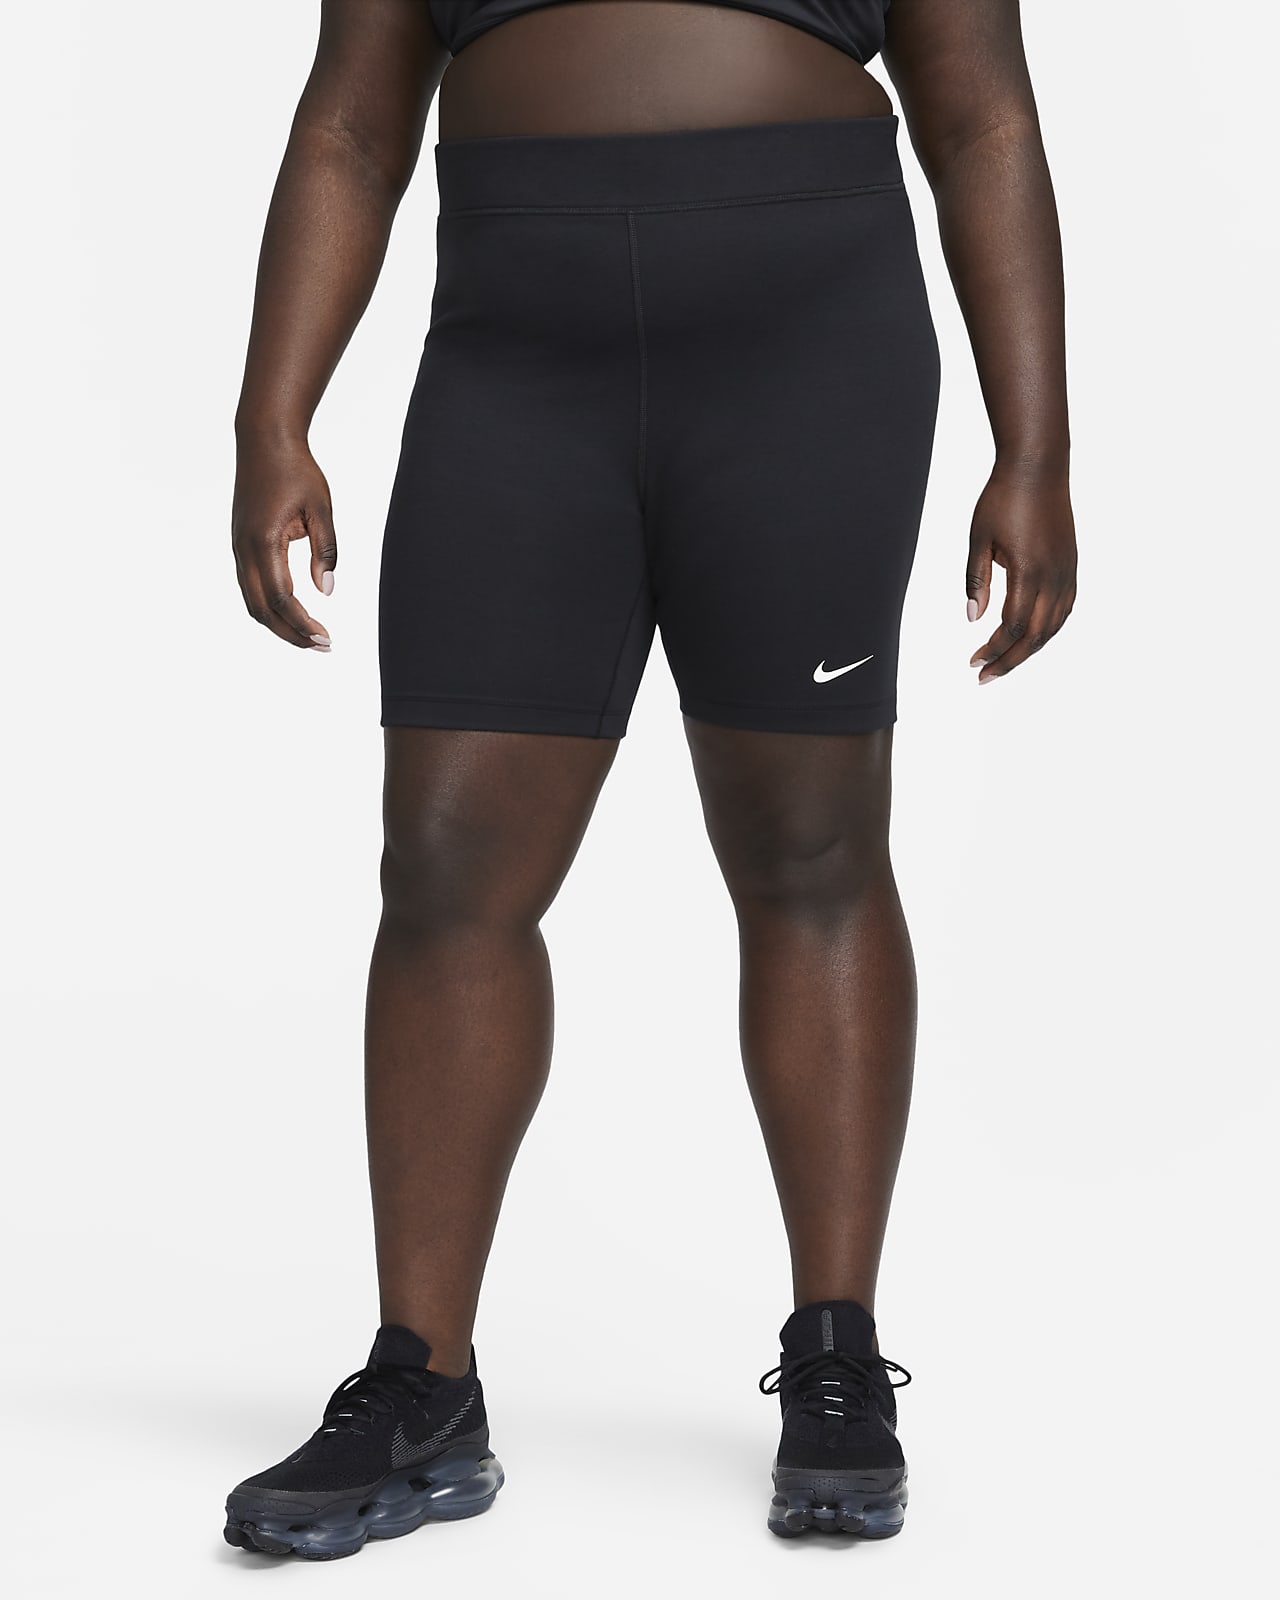 กางเกงปั่นจักรยานขาสั้น 8 นิ้วเอวสูงผู้หญิง Nike Sportswear Classic (พลัสไซส์)